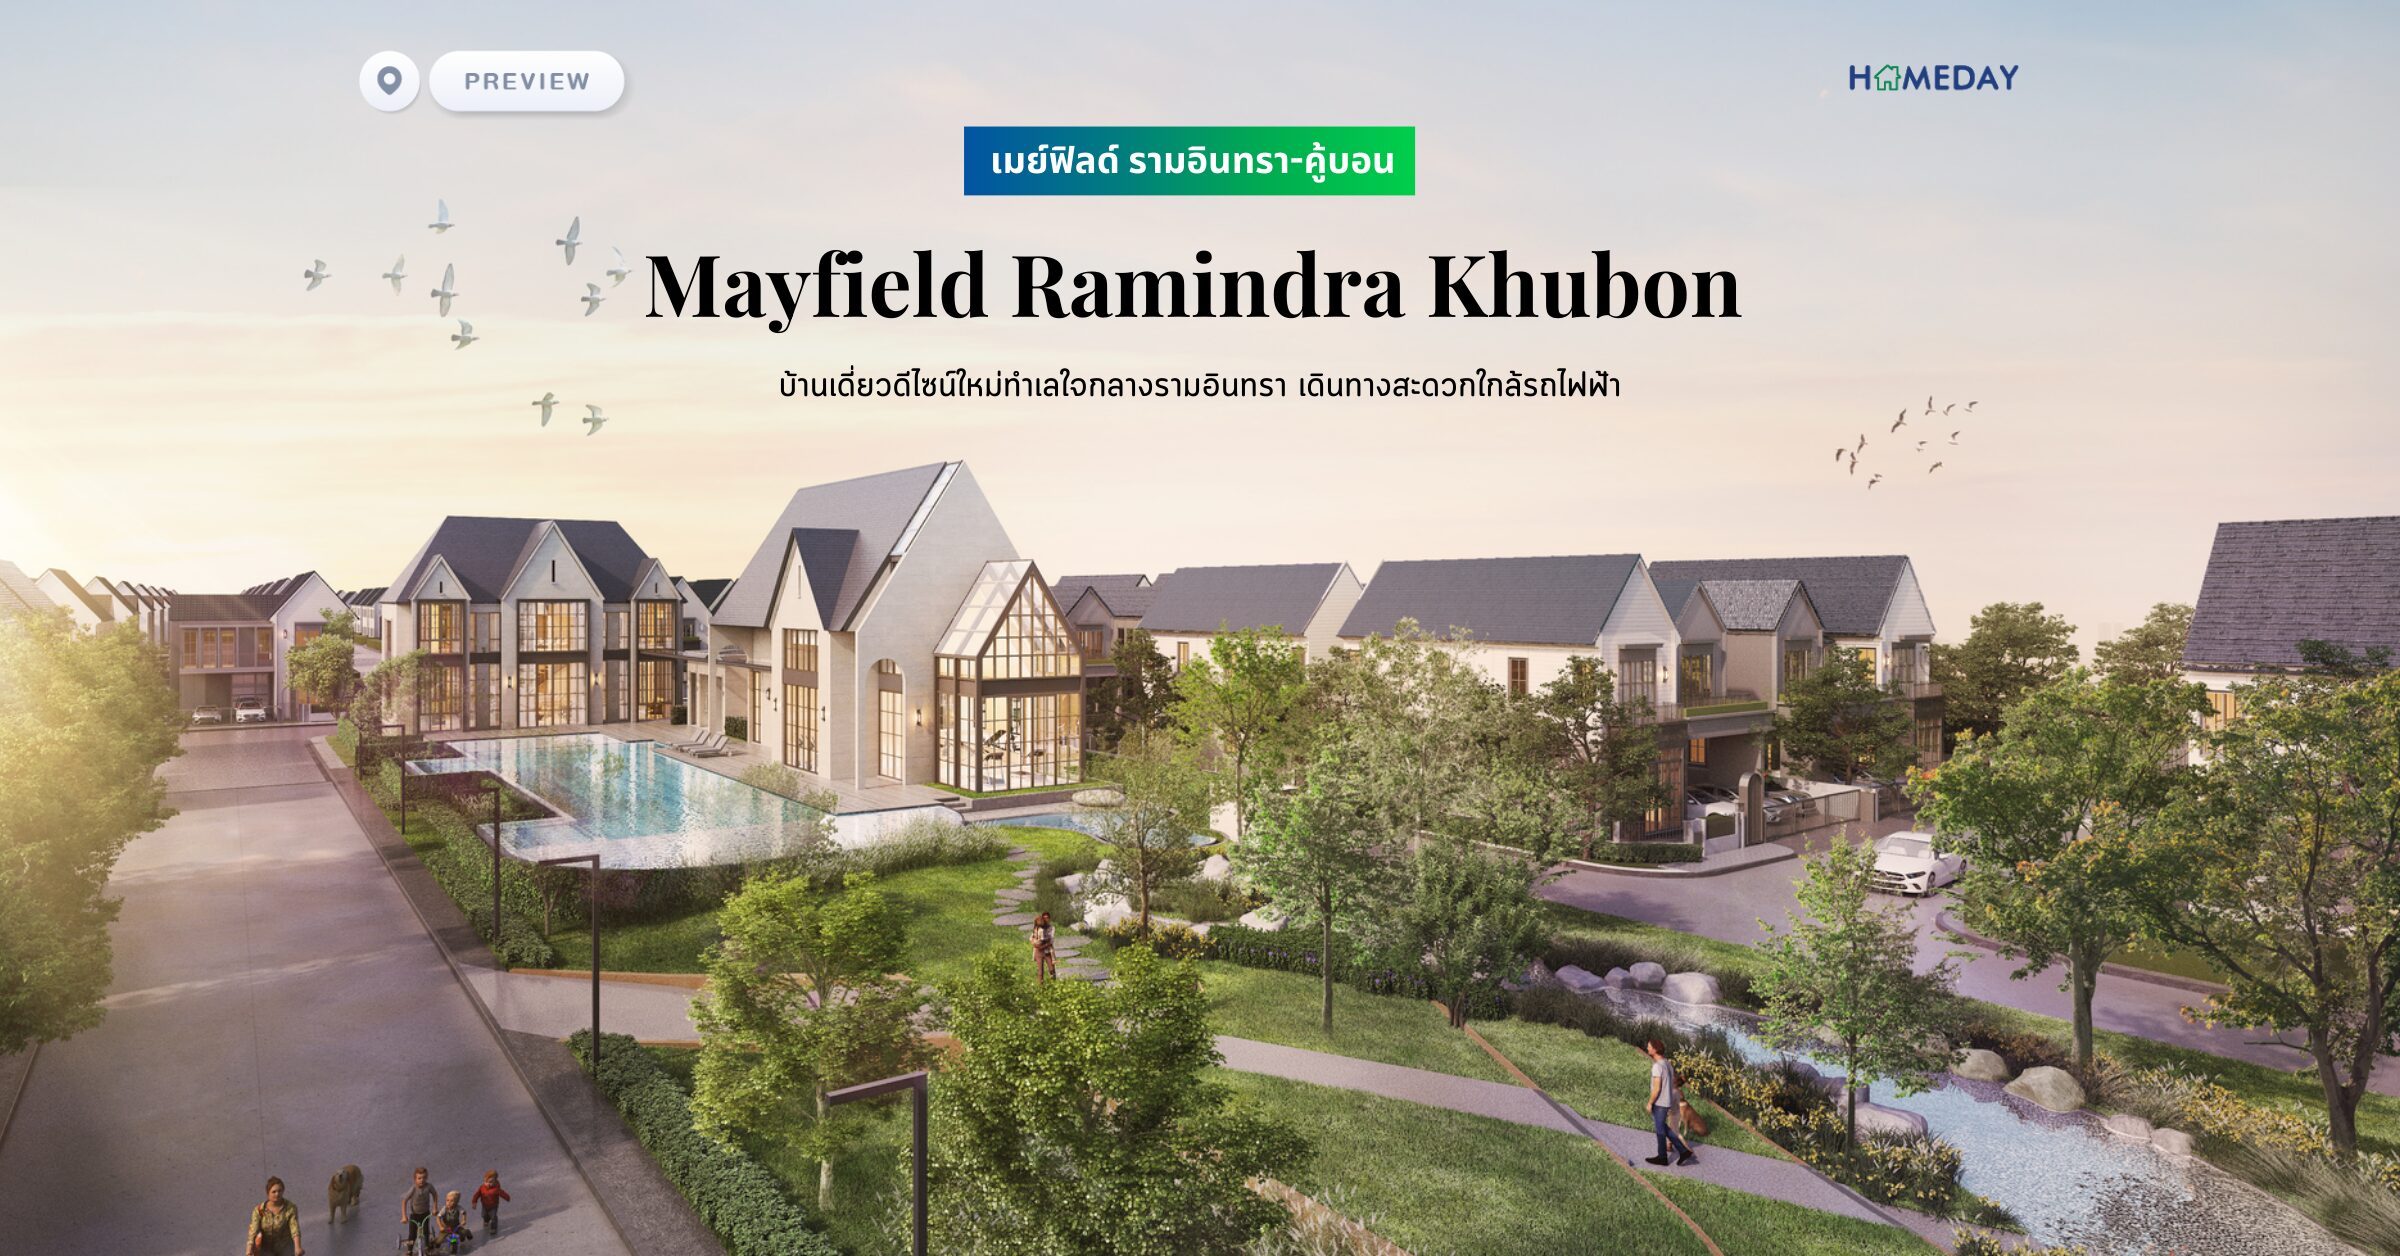 พรีวิว เมย์ฟิลด์ รามอินทรา คู้บอน (mayfield Ramindra Khubon) บ้านเดี่ยวดีไซน์ใหม่ทำเลใจกลางรามอินทรา เดินทางสะดวกใกล้รถไฟฟ้า